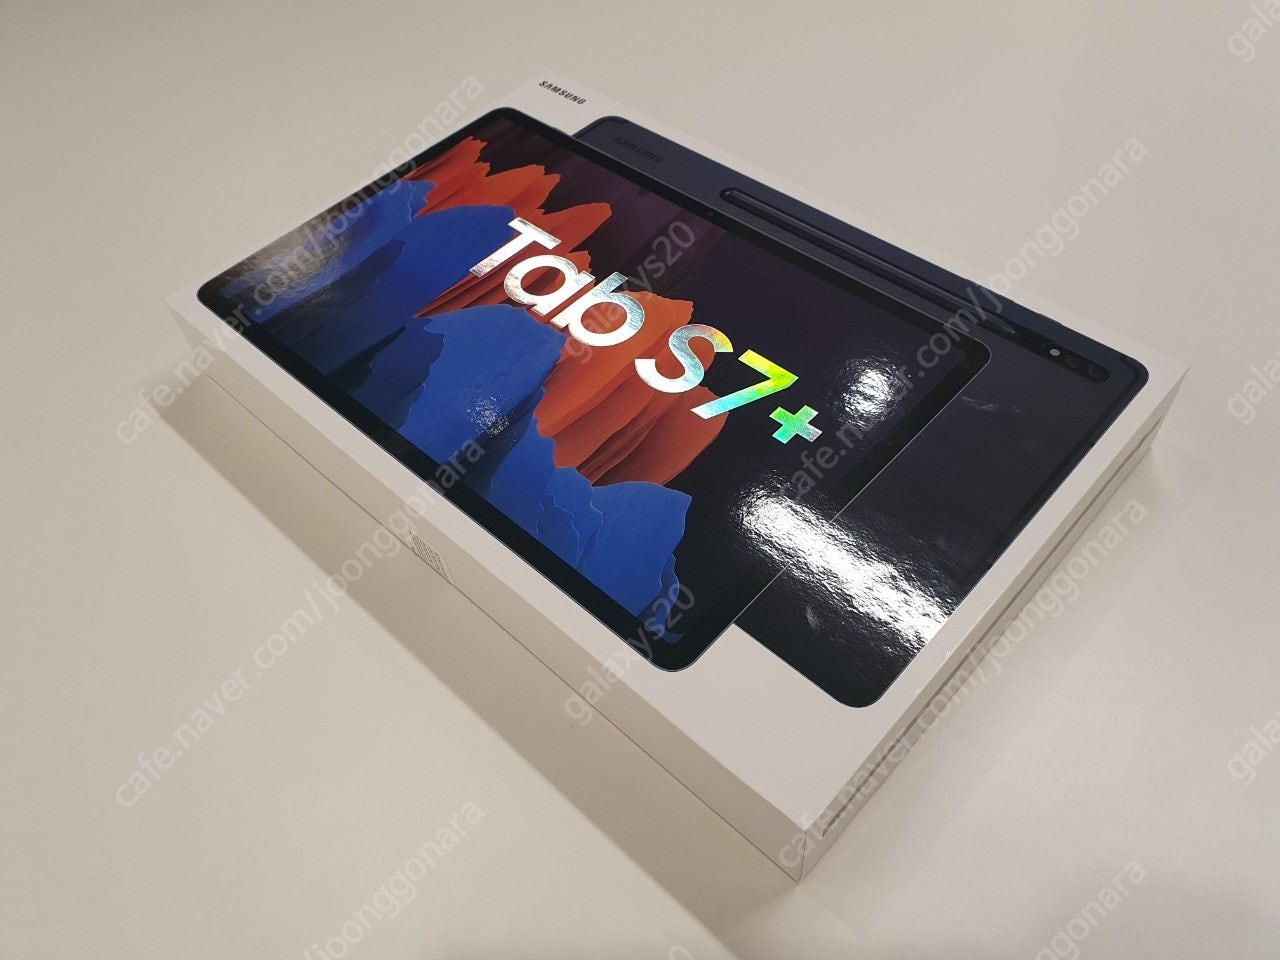 [개인] 갤럭시탭 S7+ 플러스 WiFi 256GB 미개봉 자가유통용 SM-T970